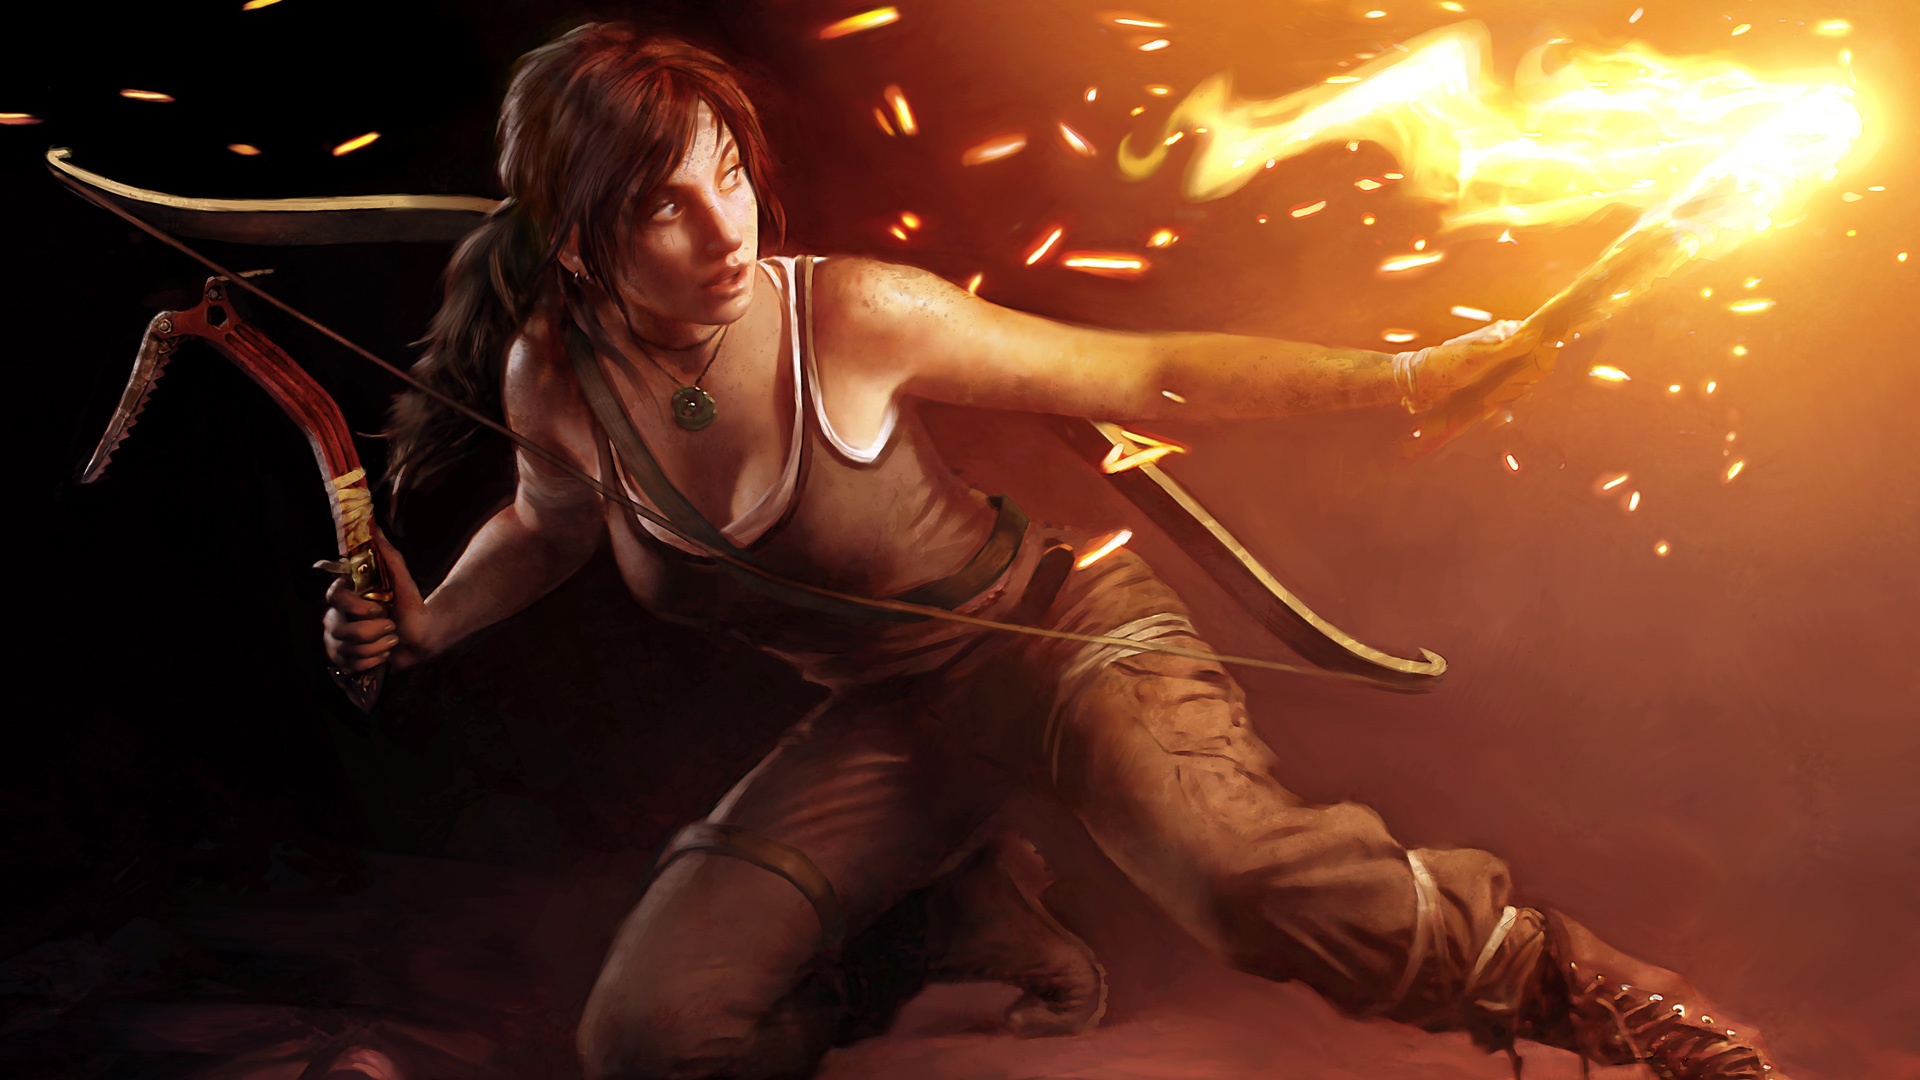 Tomb Raider 2013 Art - HD Wallpaper 